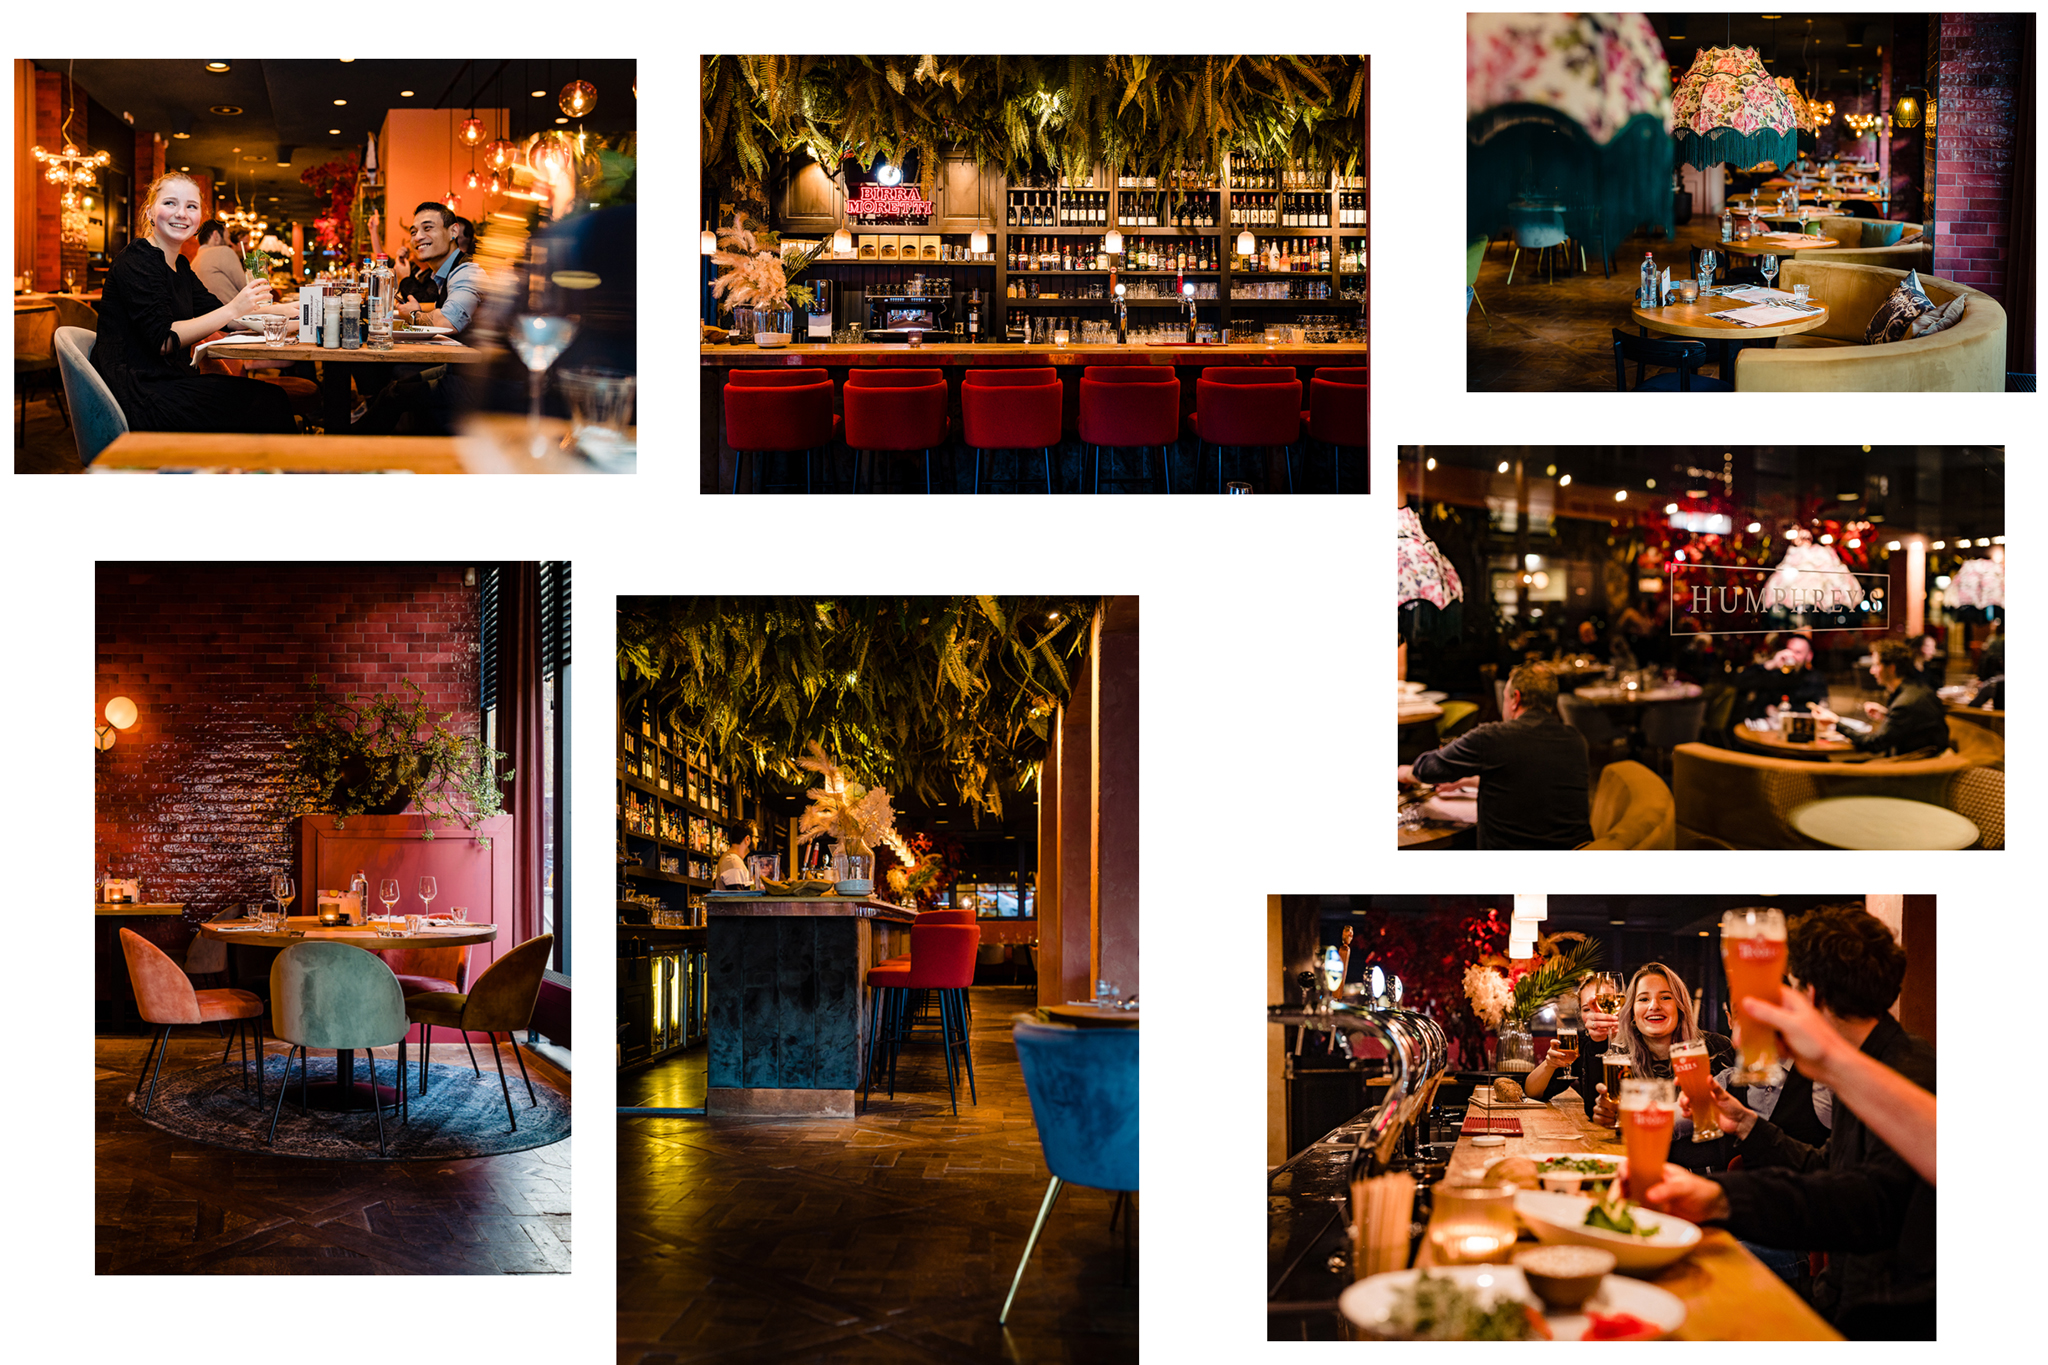 bedrijfsfotografie,restaurant, Humphreys, Rotterdam, Amsterdam,bedrijfsfotograaf,zakelijkefotografie,bedrijfsreportage,gelderland,nijmegen,arnhem